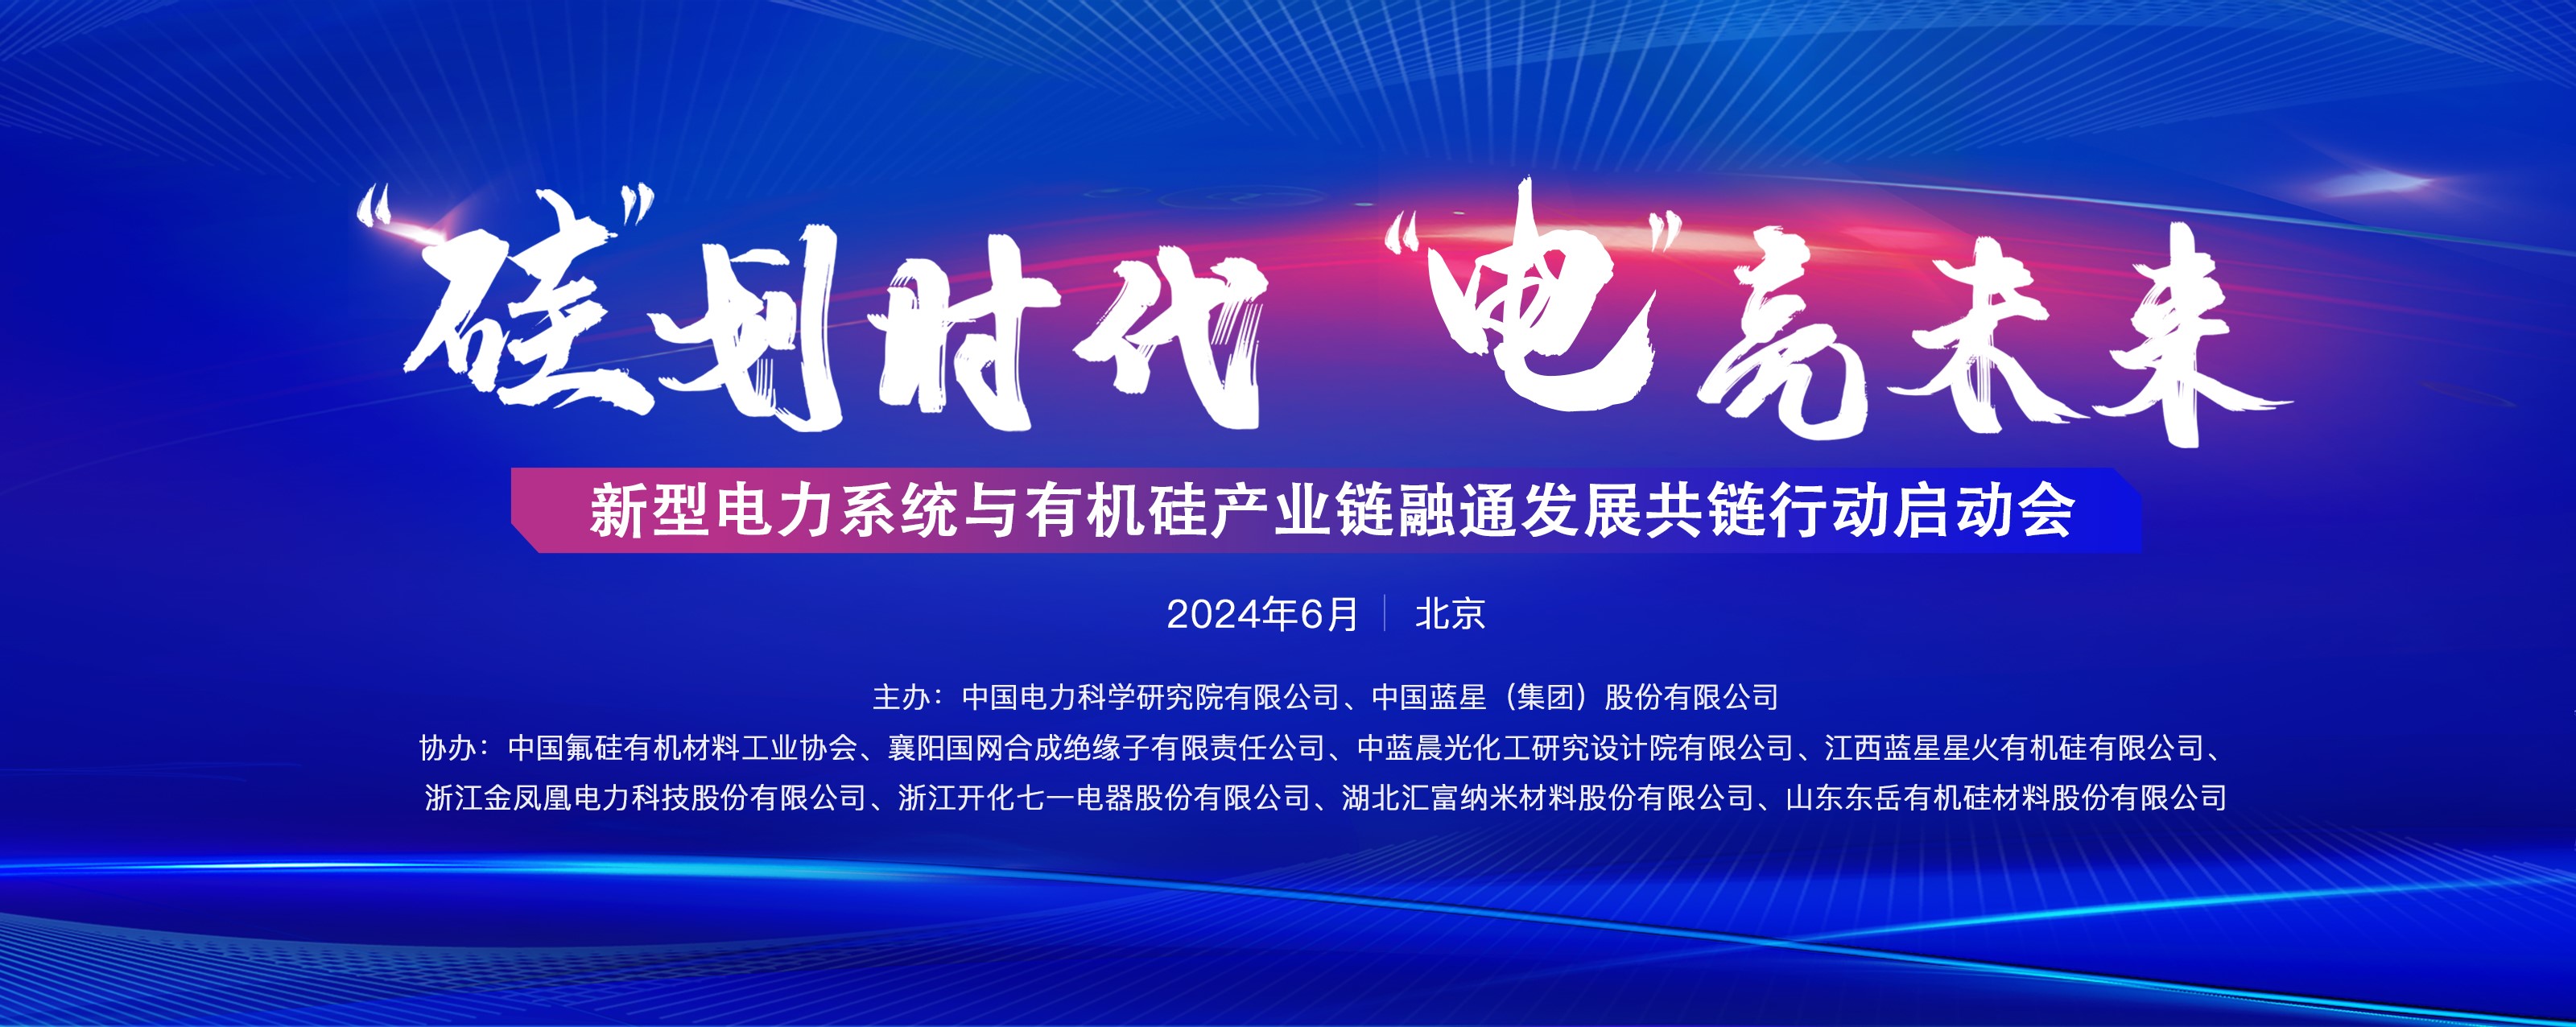 蓝星公司联合中国电科院启动产业链融通发展共链行动